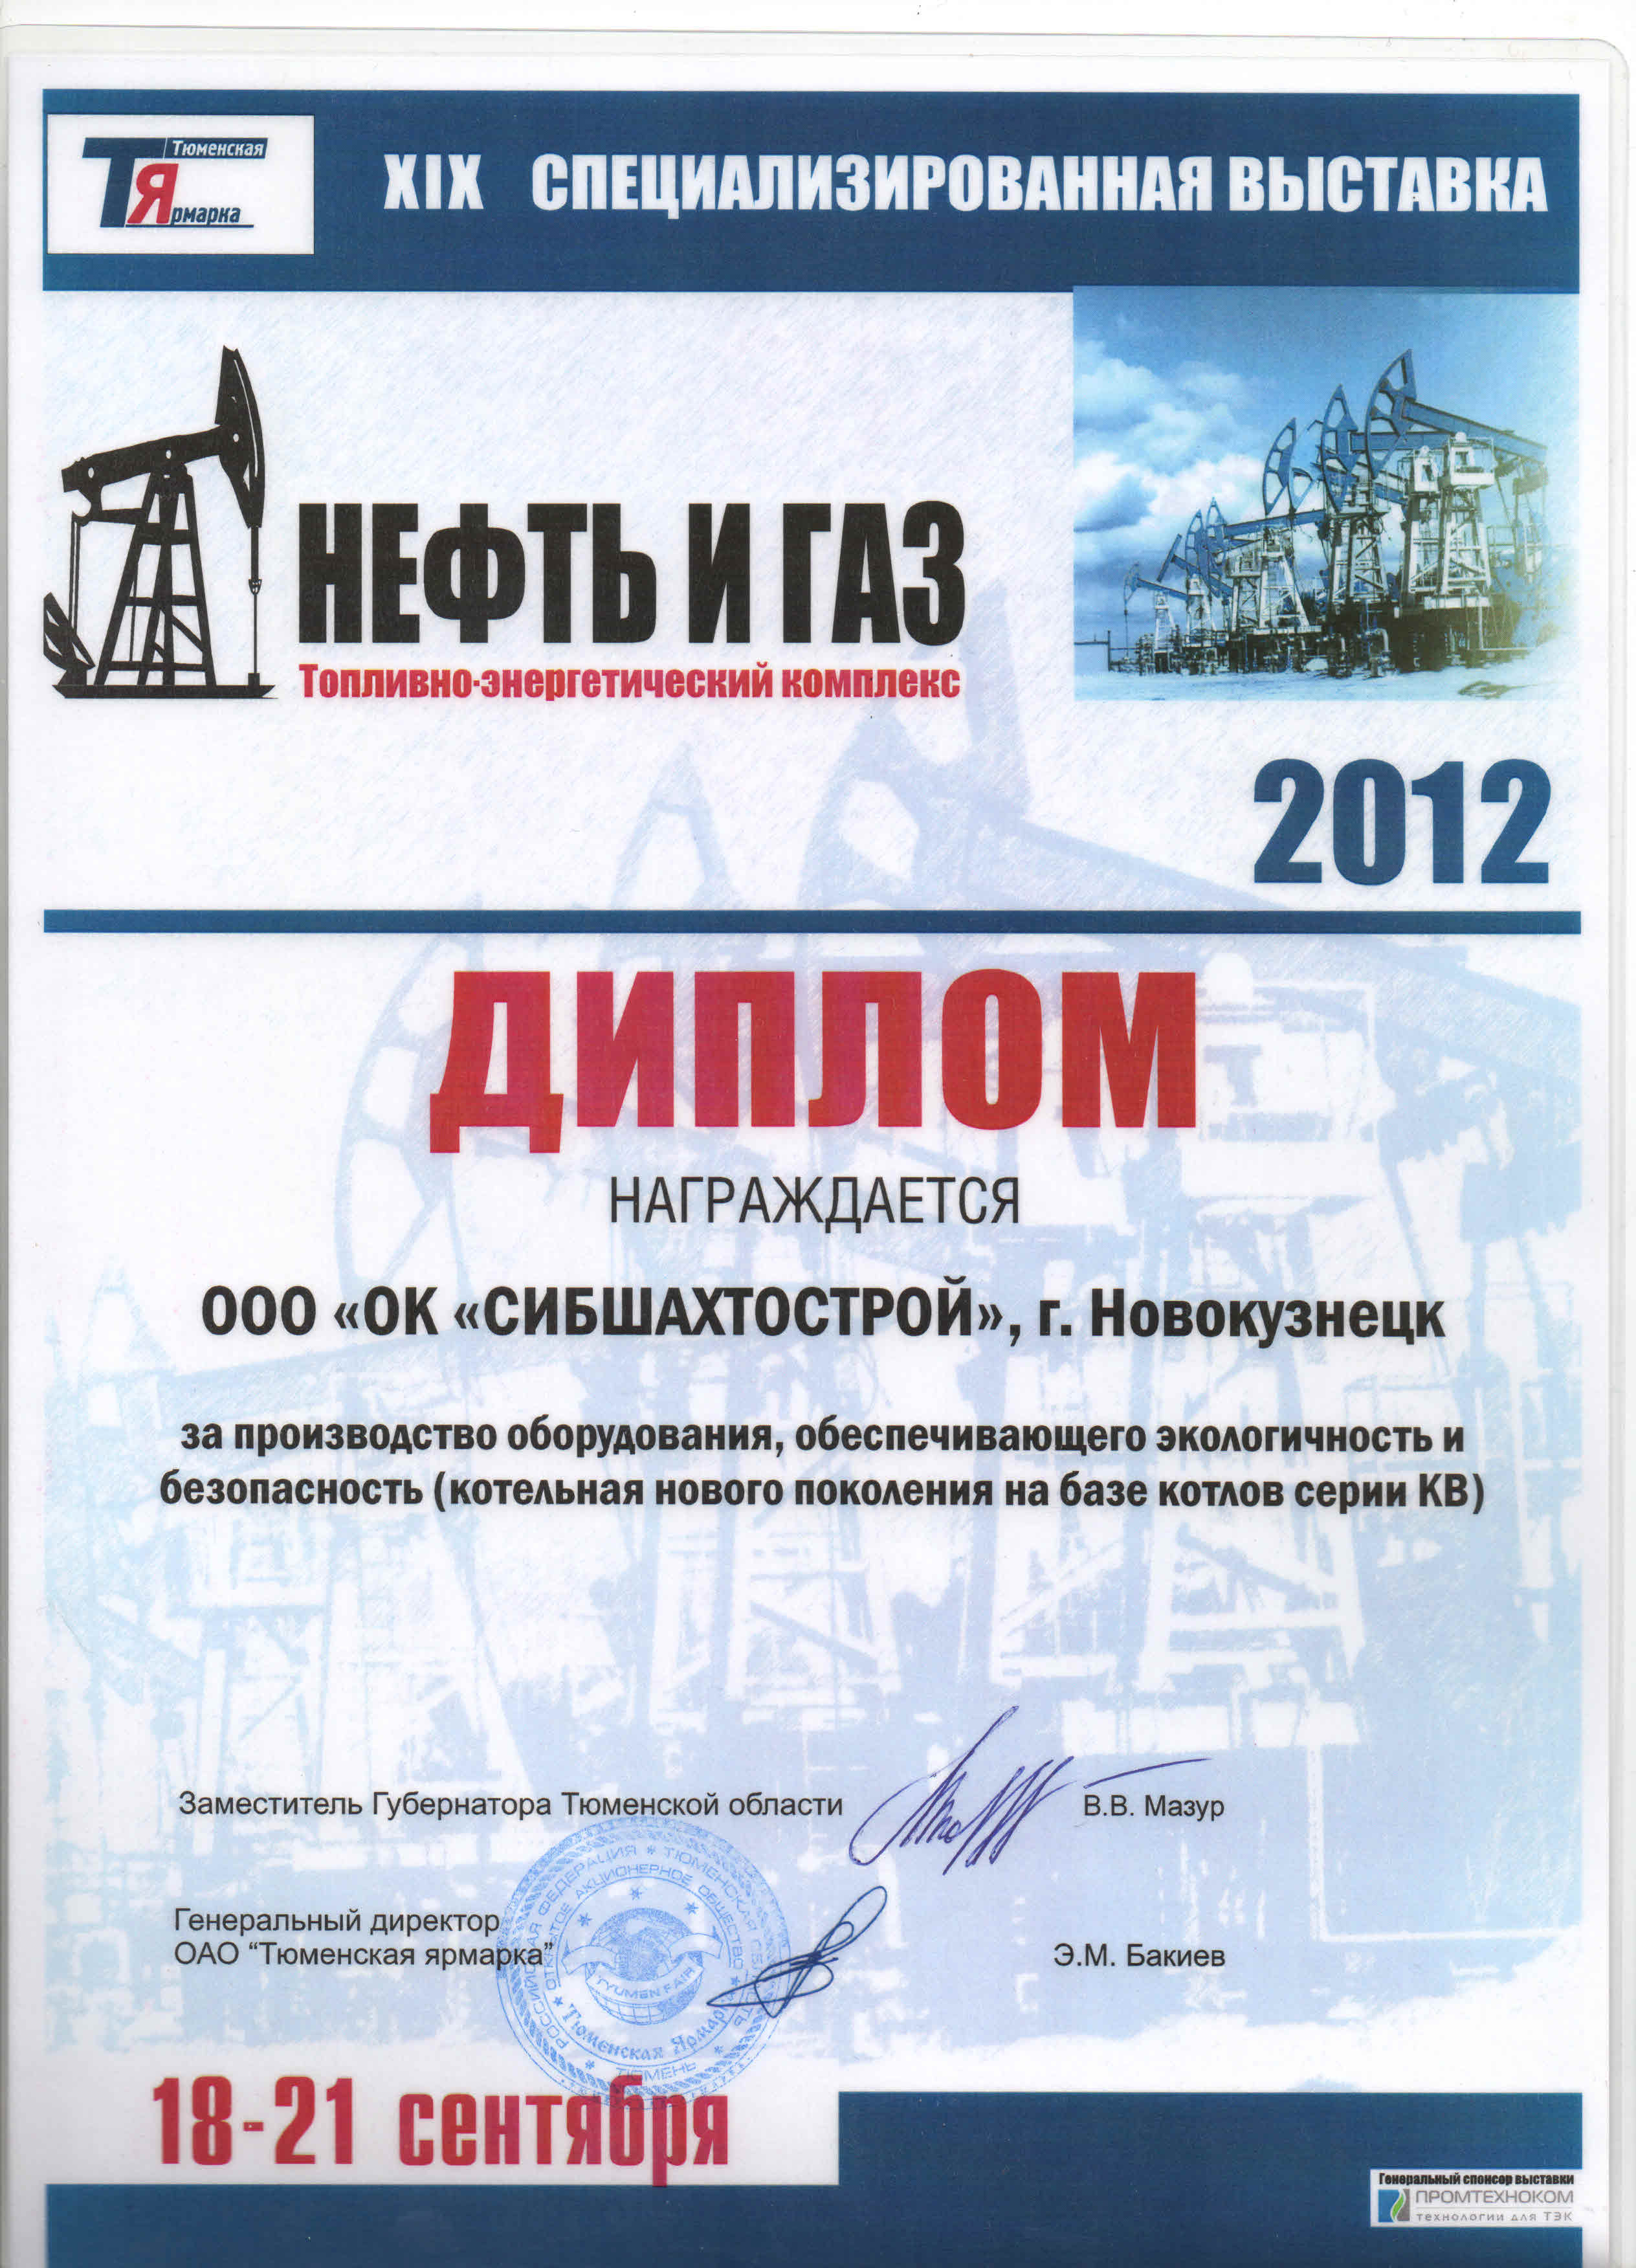 Выставка "Нефть и газ"